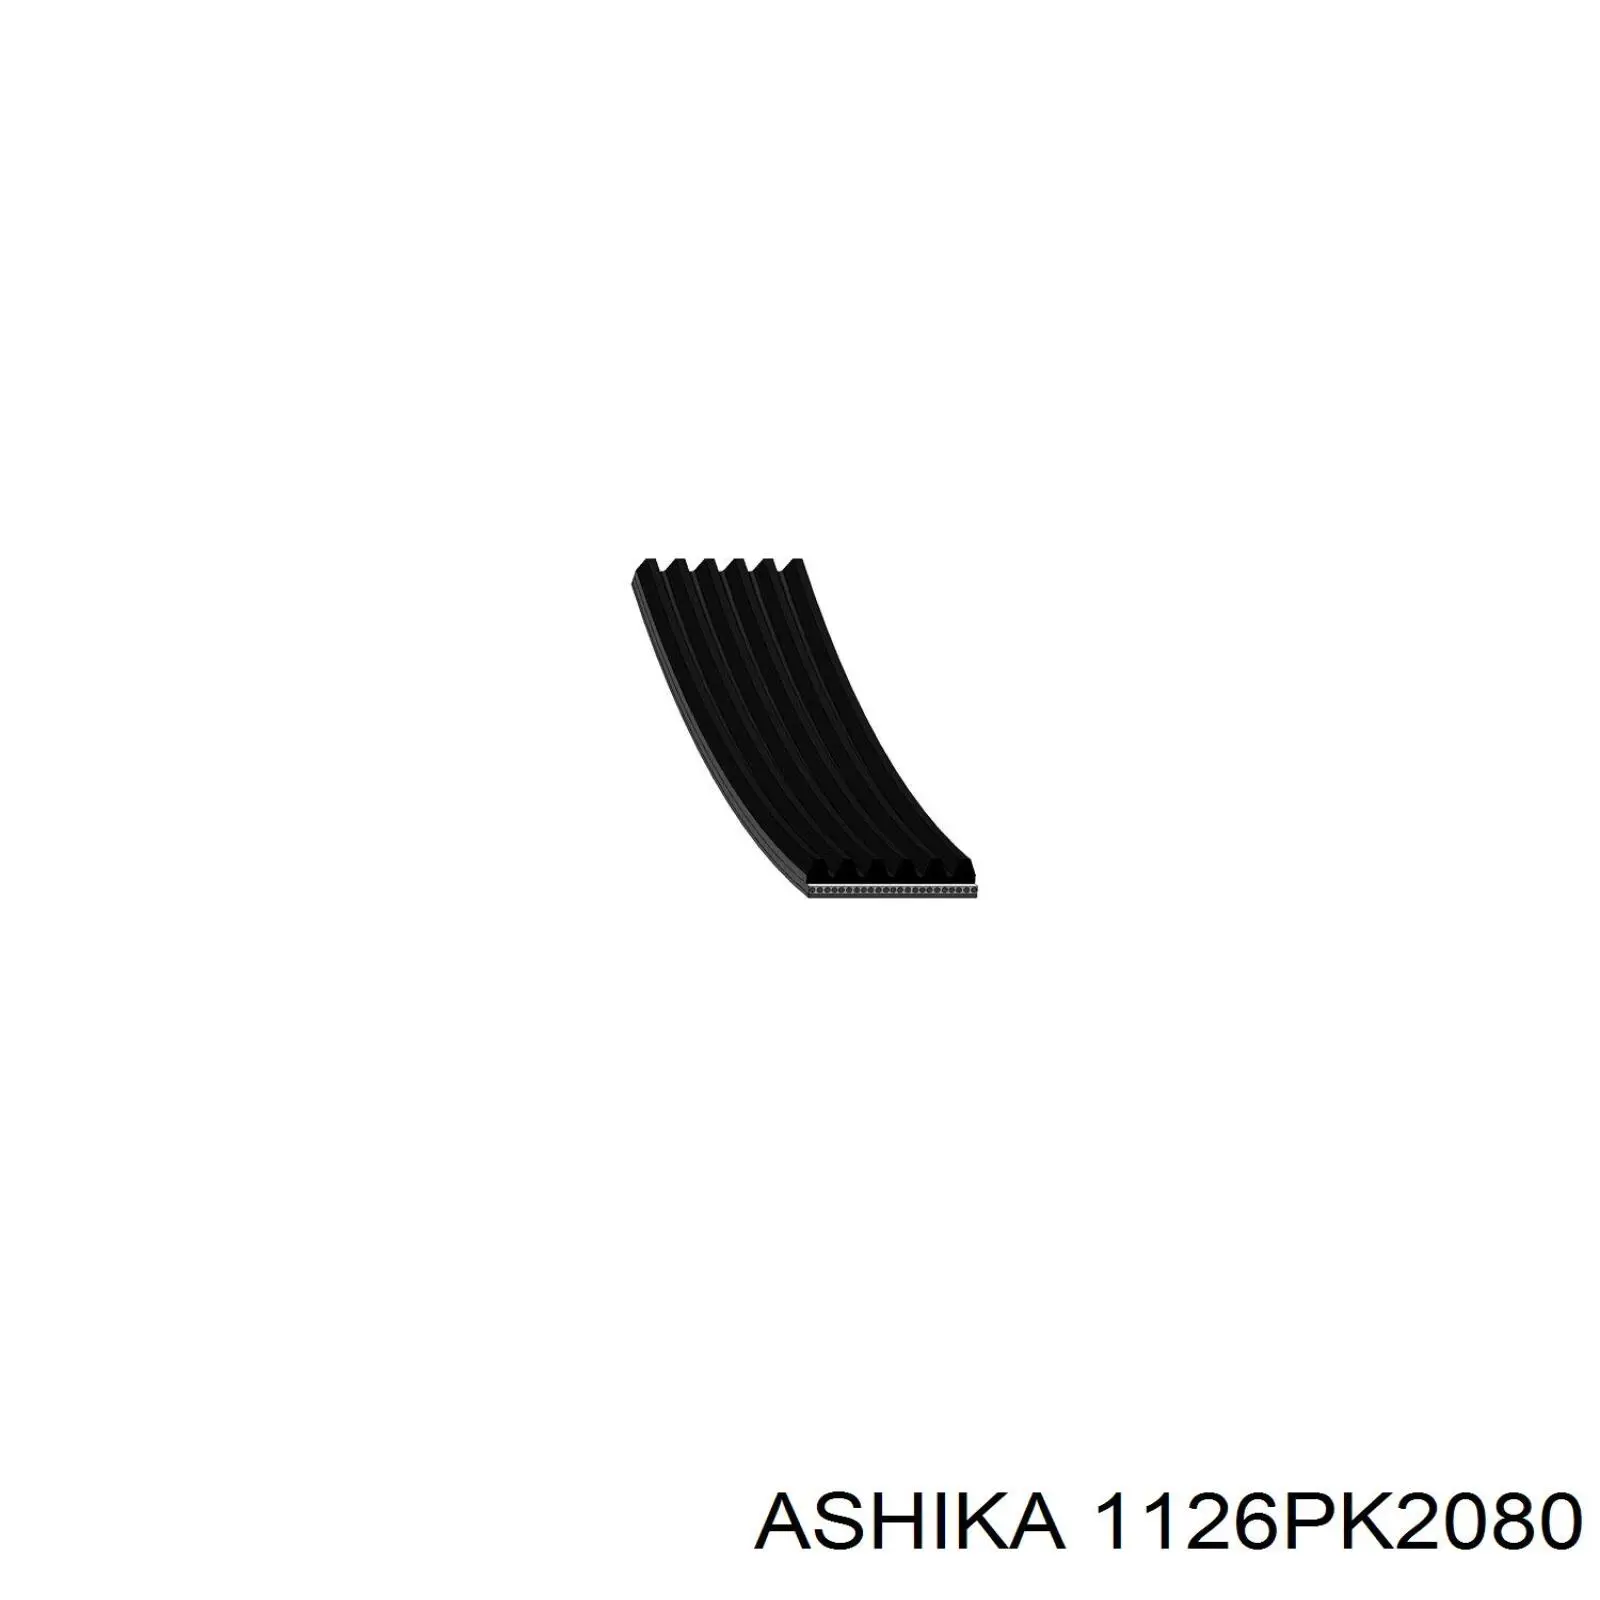 1126PK2080 Ashika correa trapezoidal